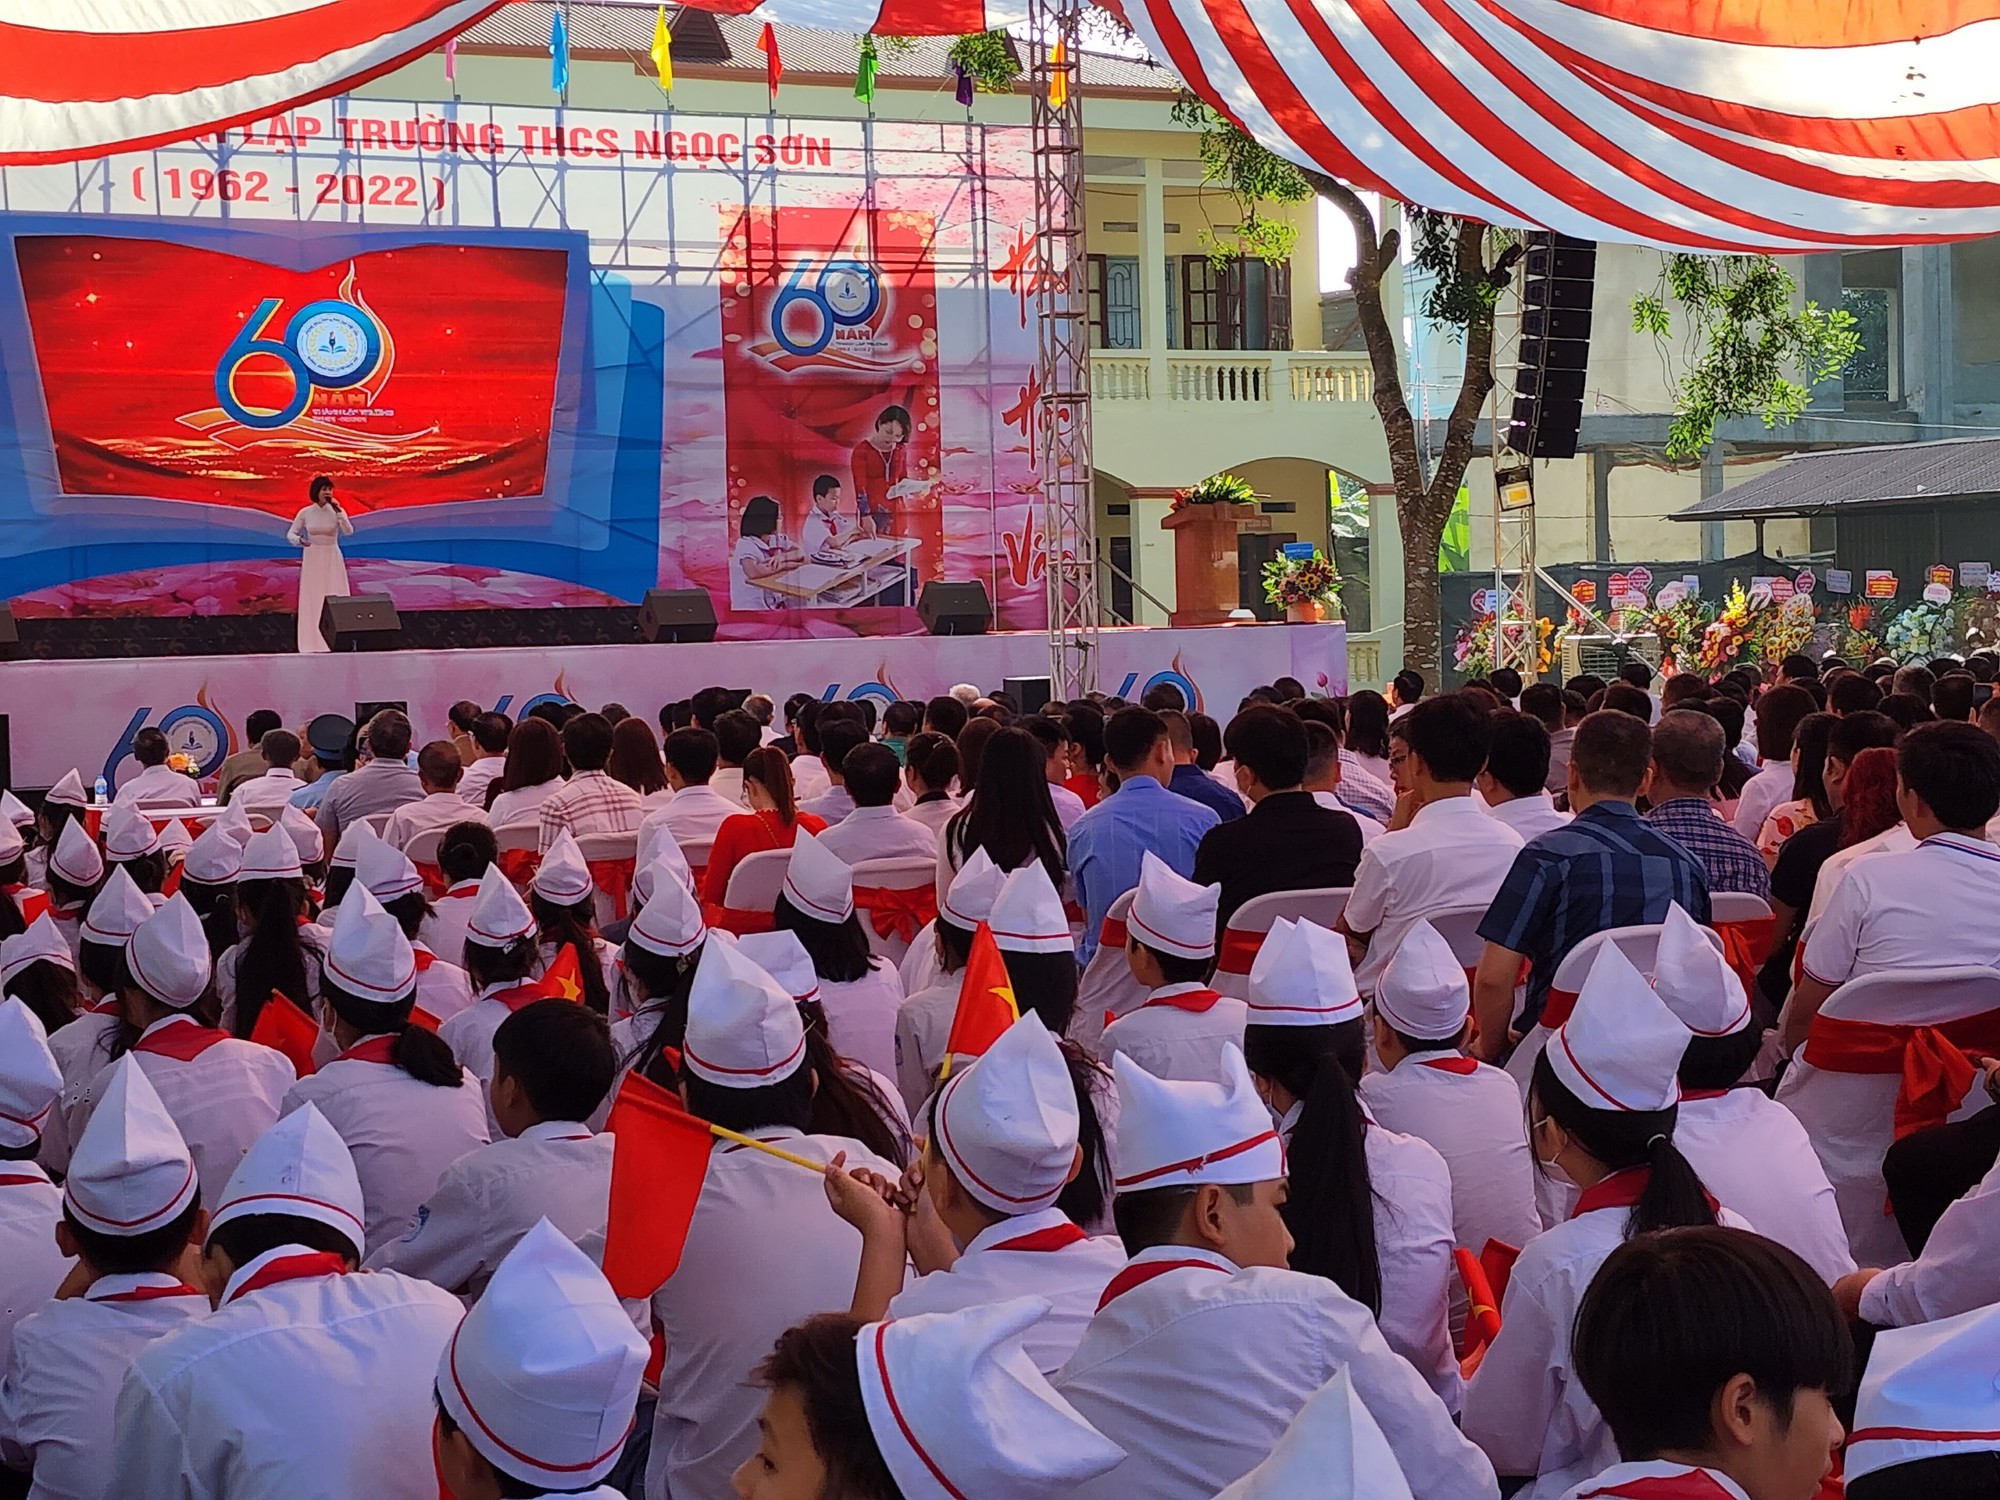 Bắc Giang: Kỷ niệm 60 năm thành lập trường THCS Ngọc Sơn - Ảnh 3.